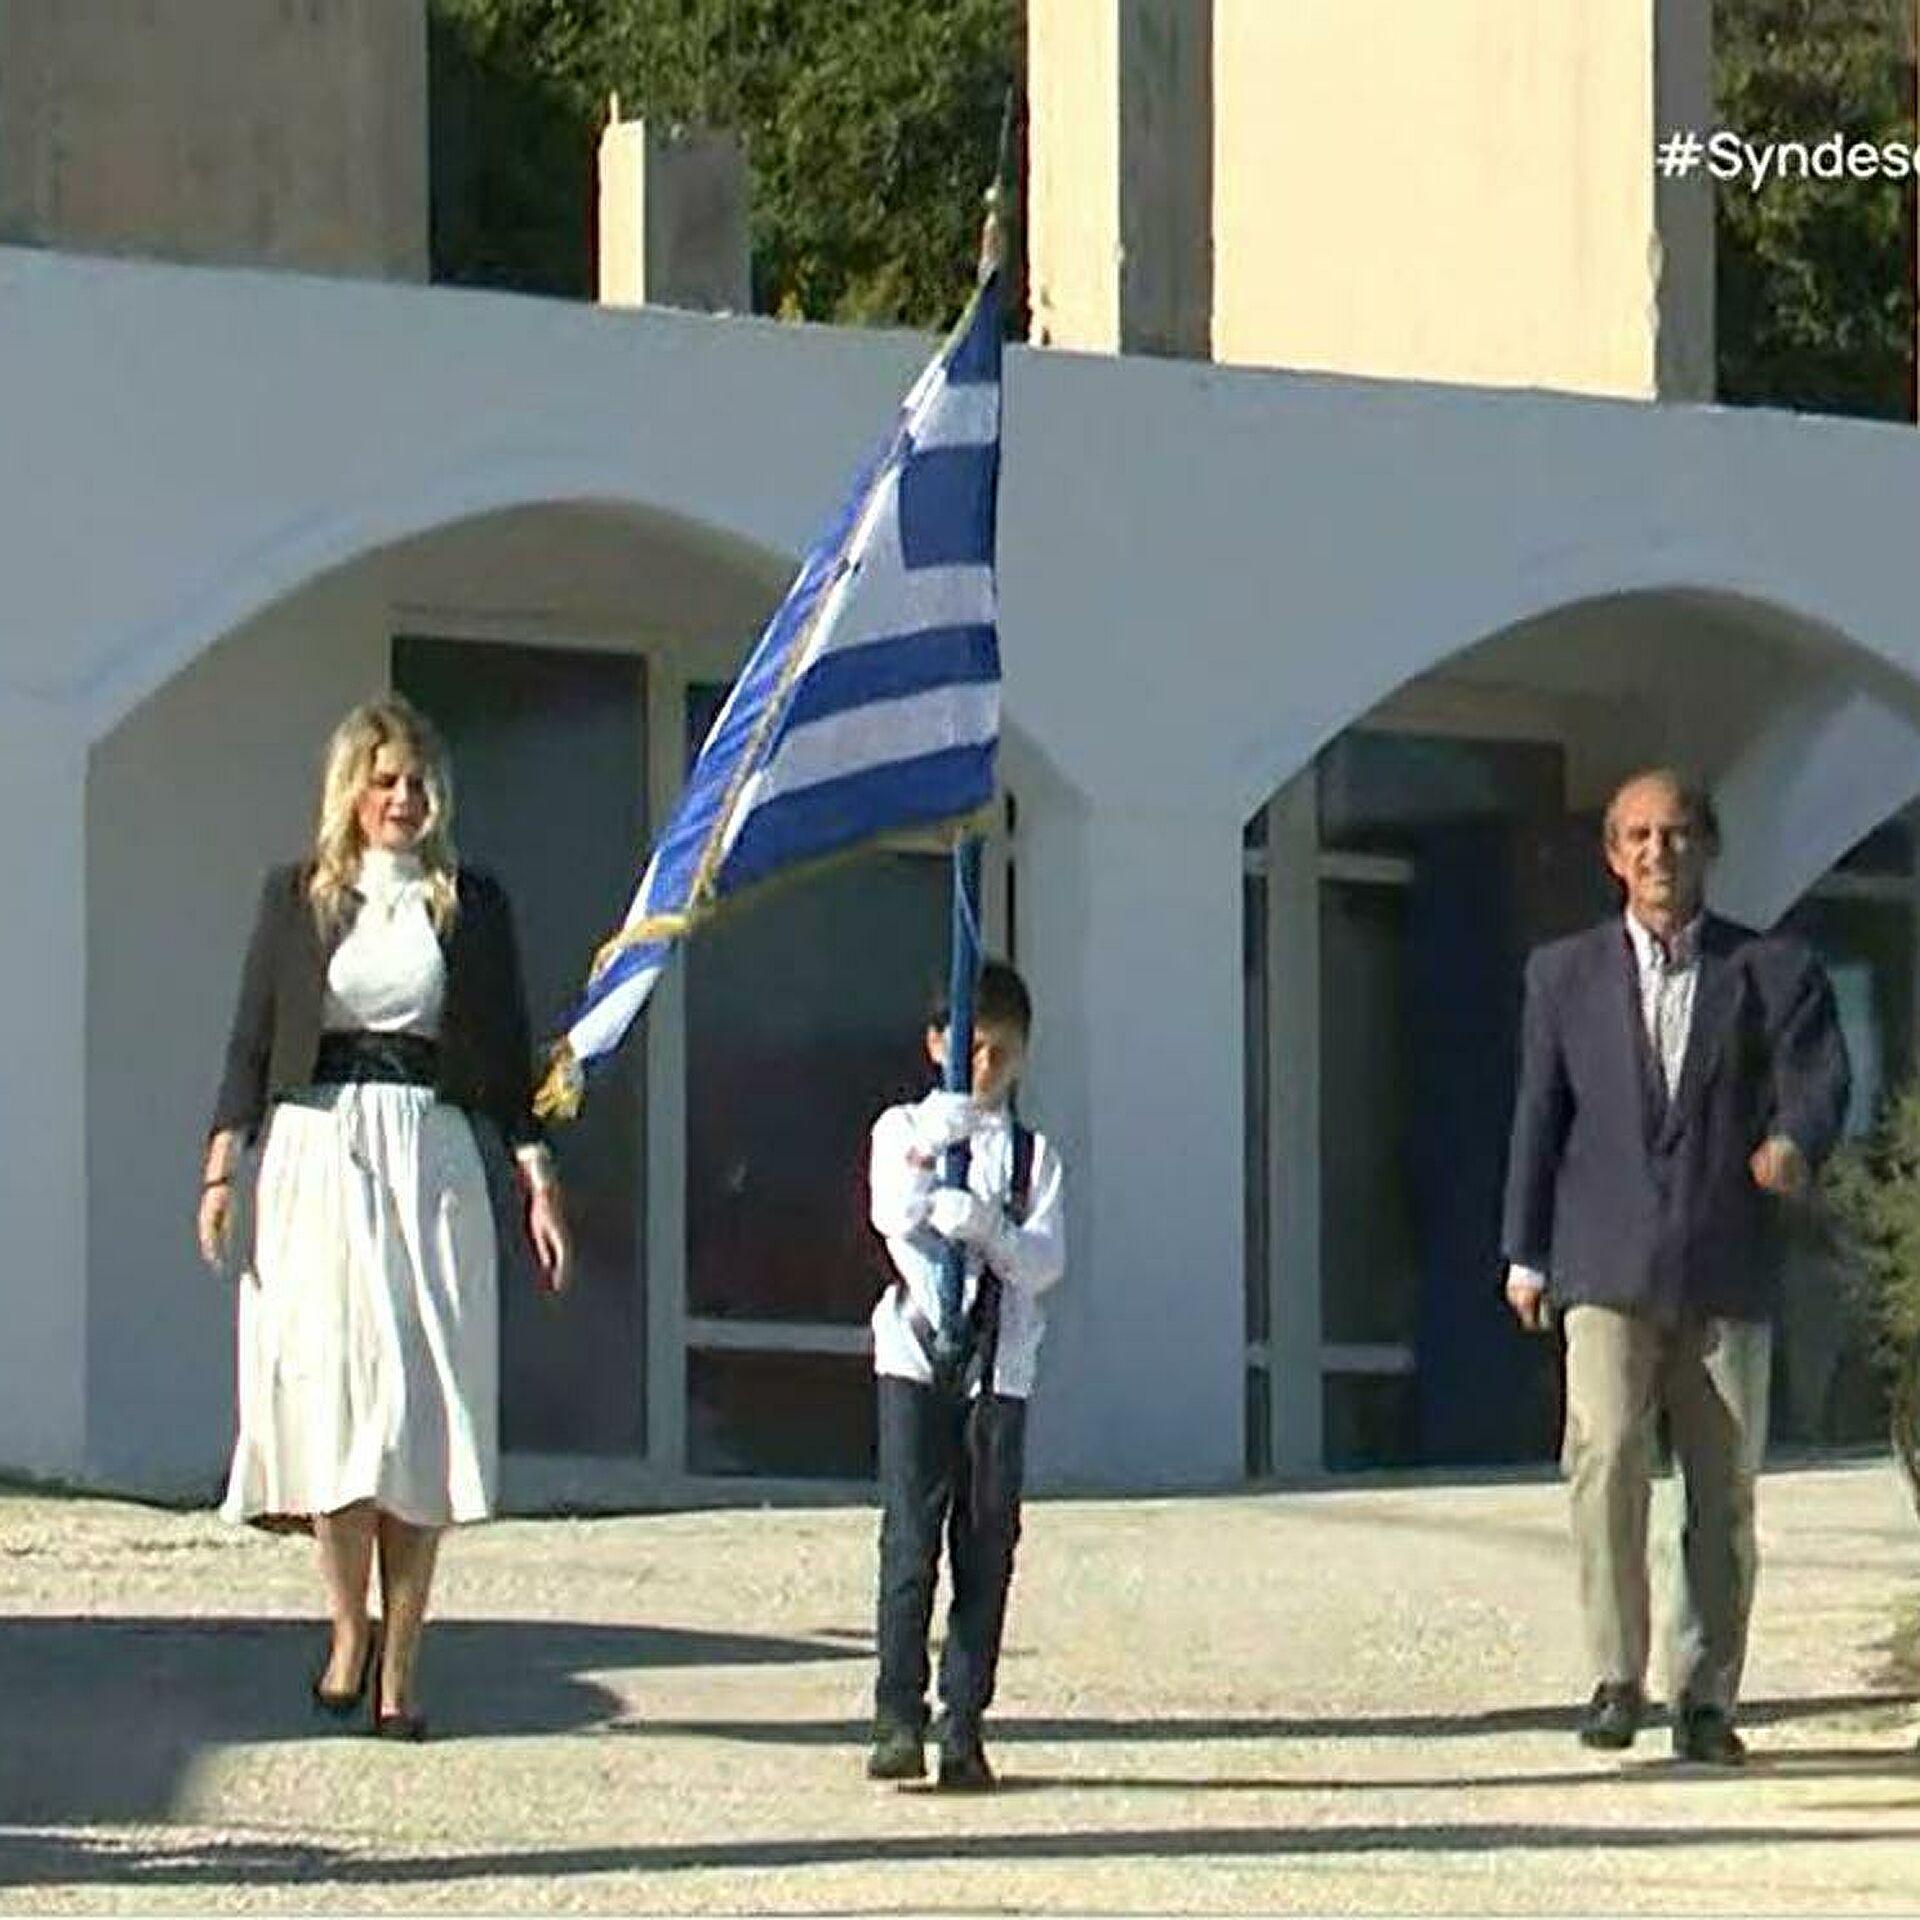 Μαθράκι: Ο Τάσος έκανε παρέλαση μόνος του και έκανε τους Έλληνες να δακρύσουν από περηφάνια